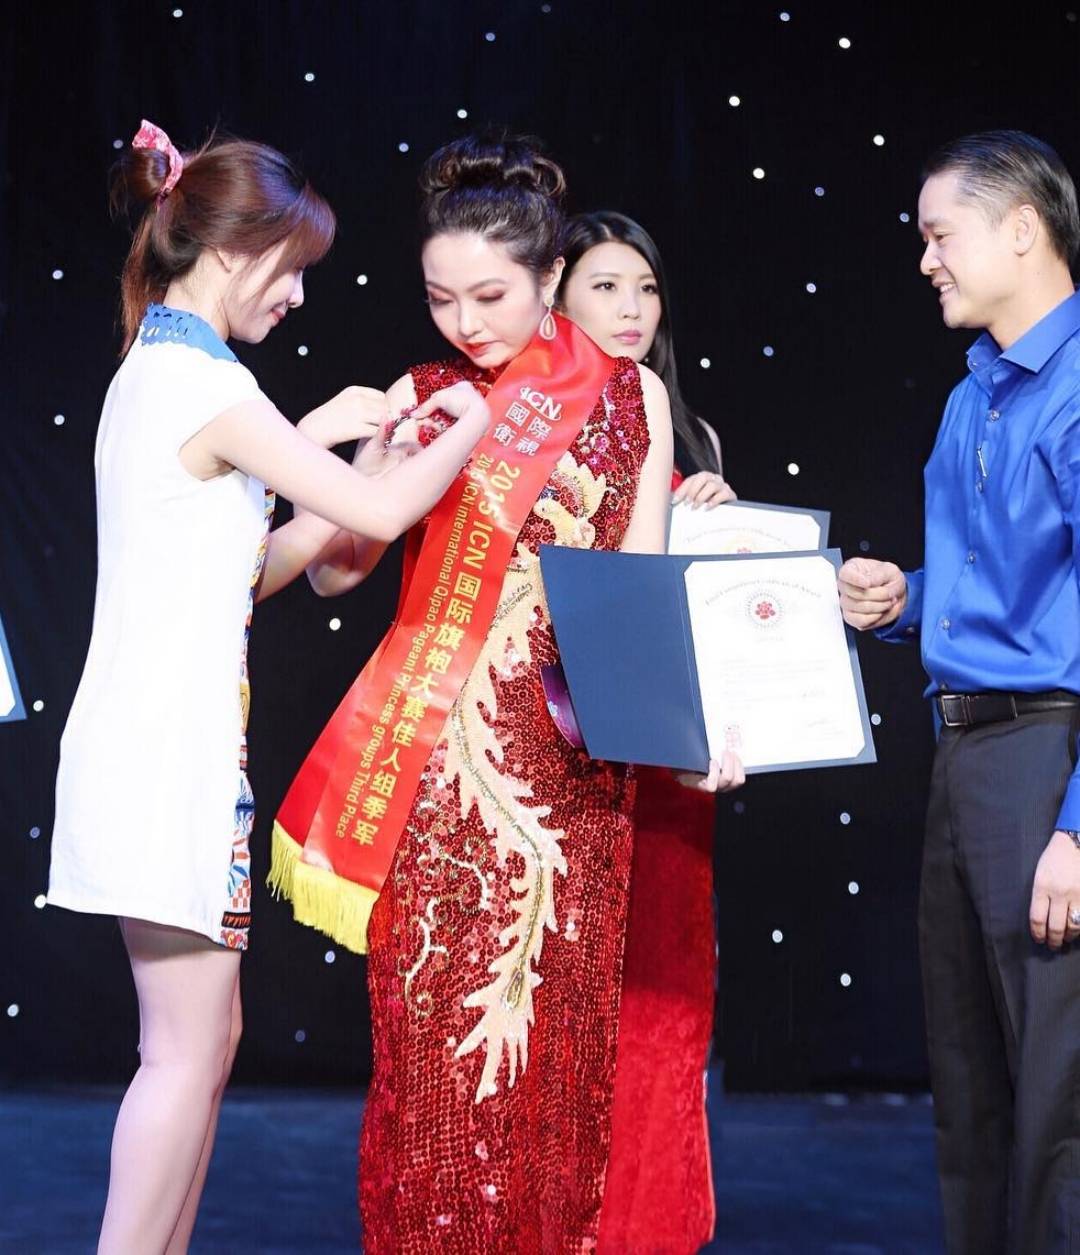 邓蓓佳 邓蓓佳因参加旗袍选美大赛获得季军入行。